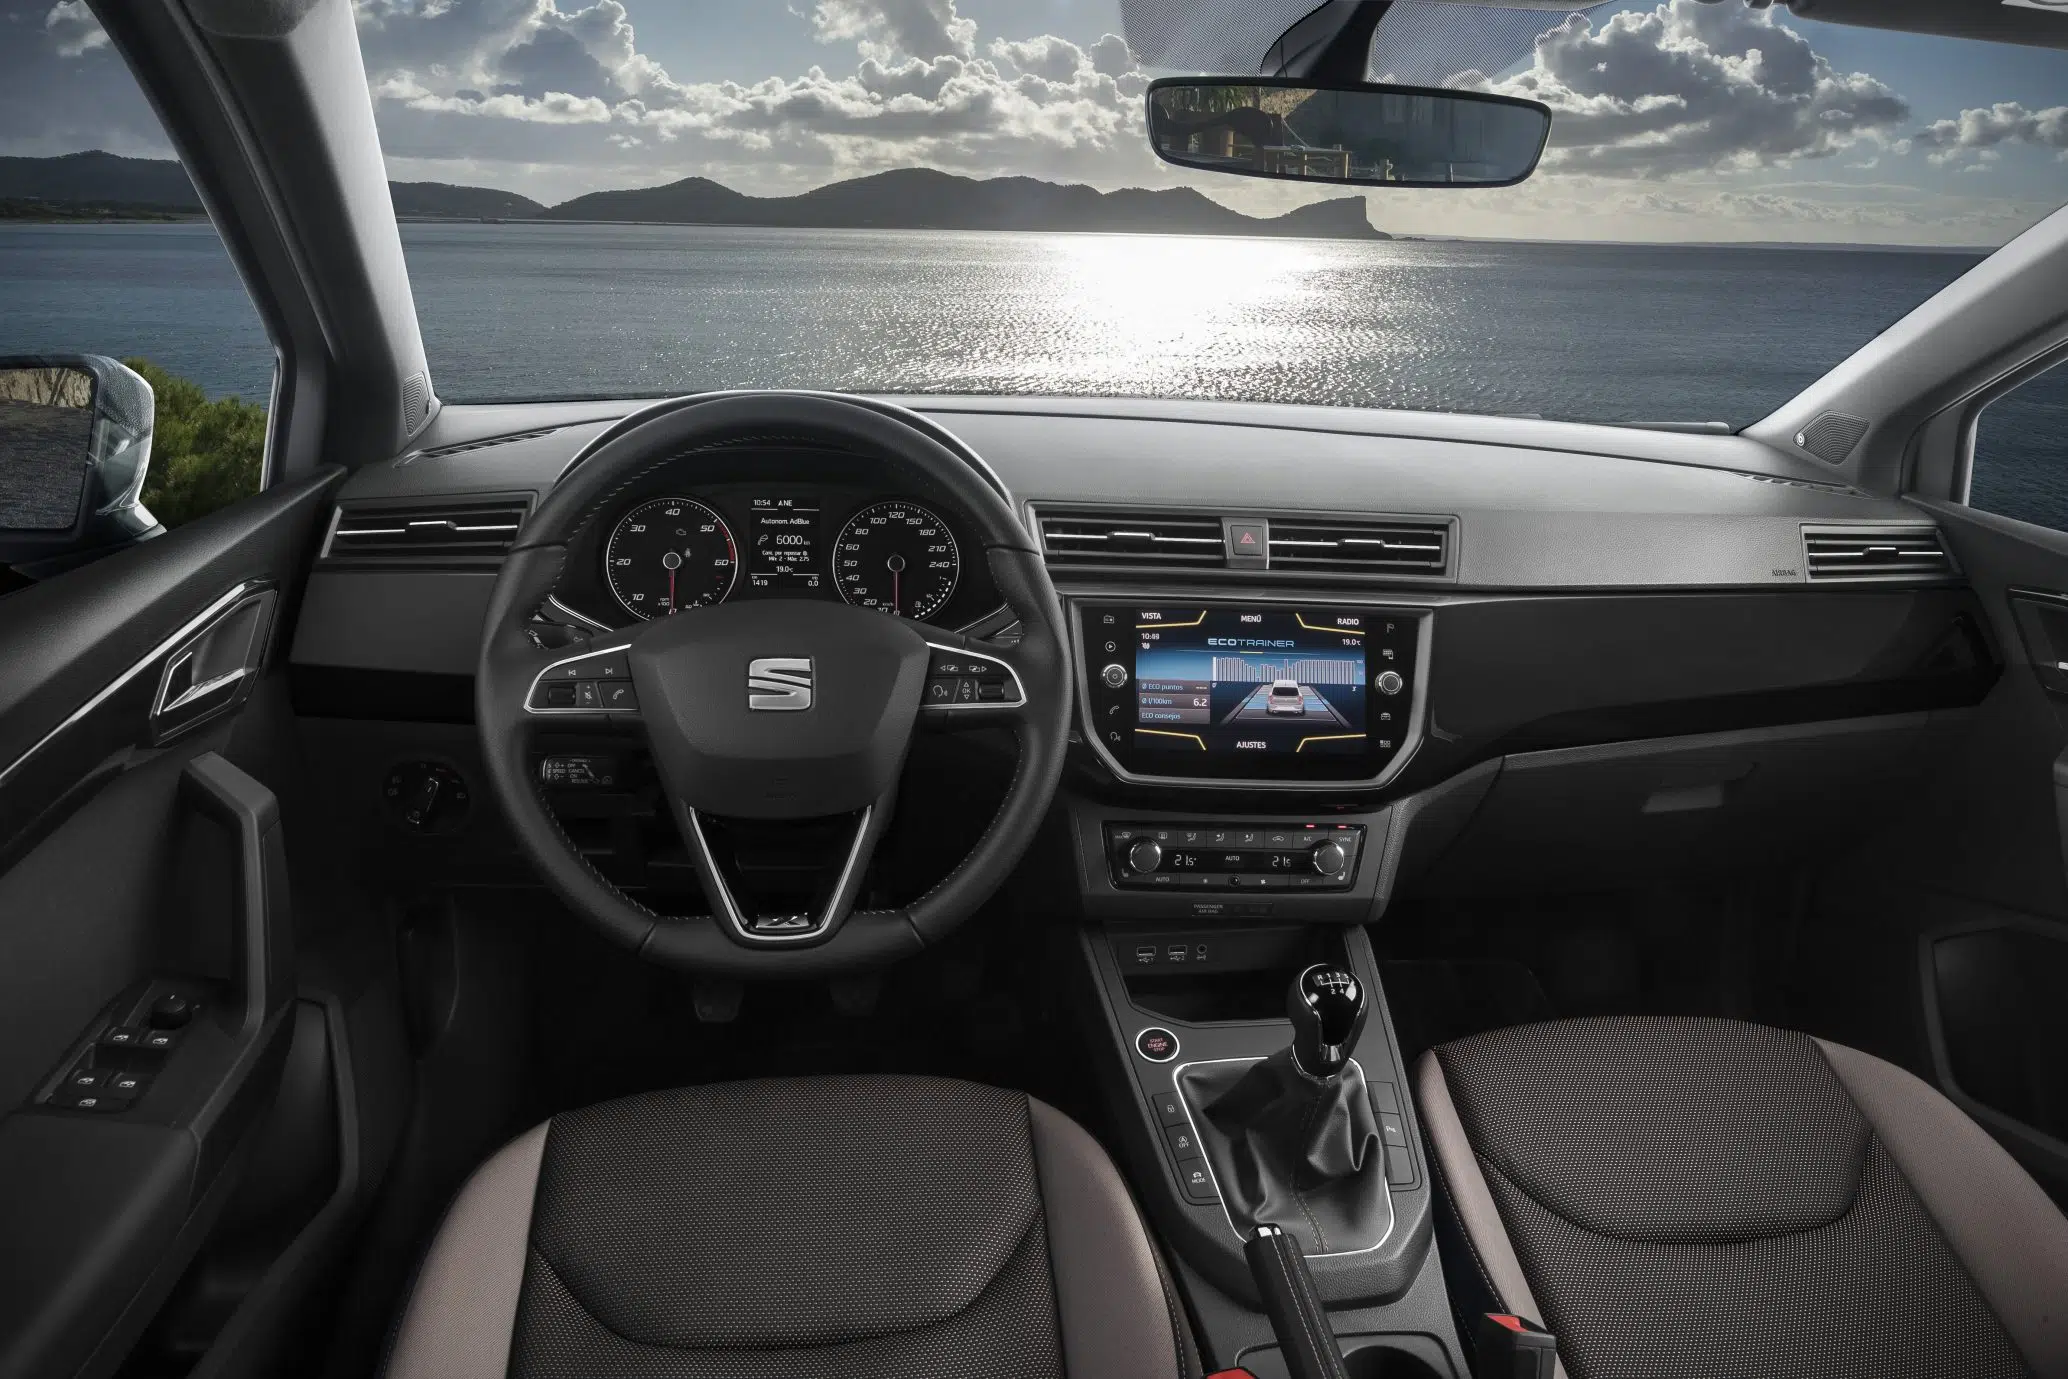 SEAT Ibiza 1.6 TDI — interior